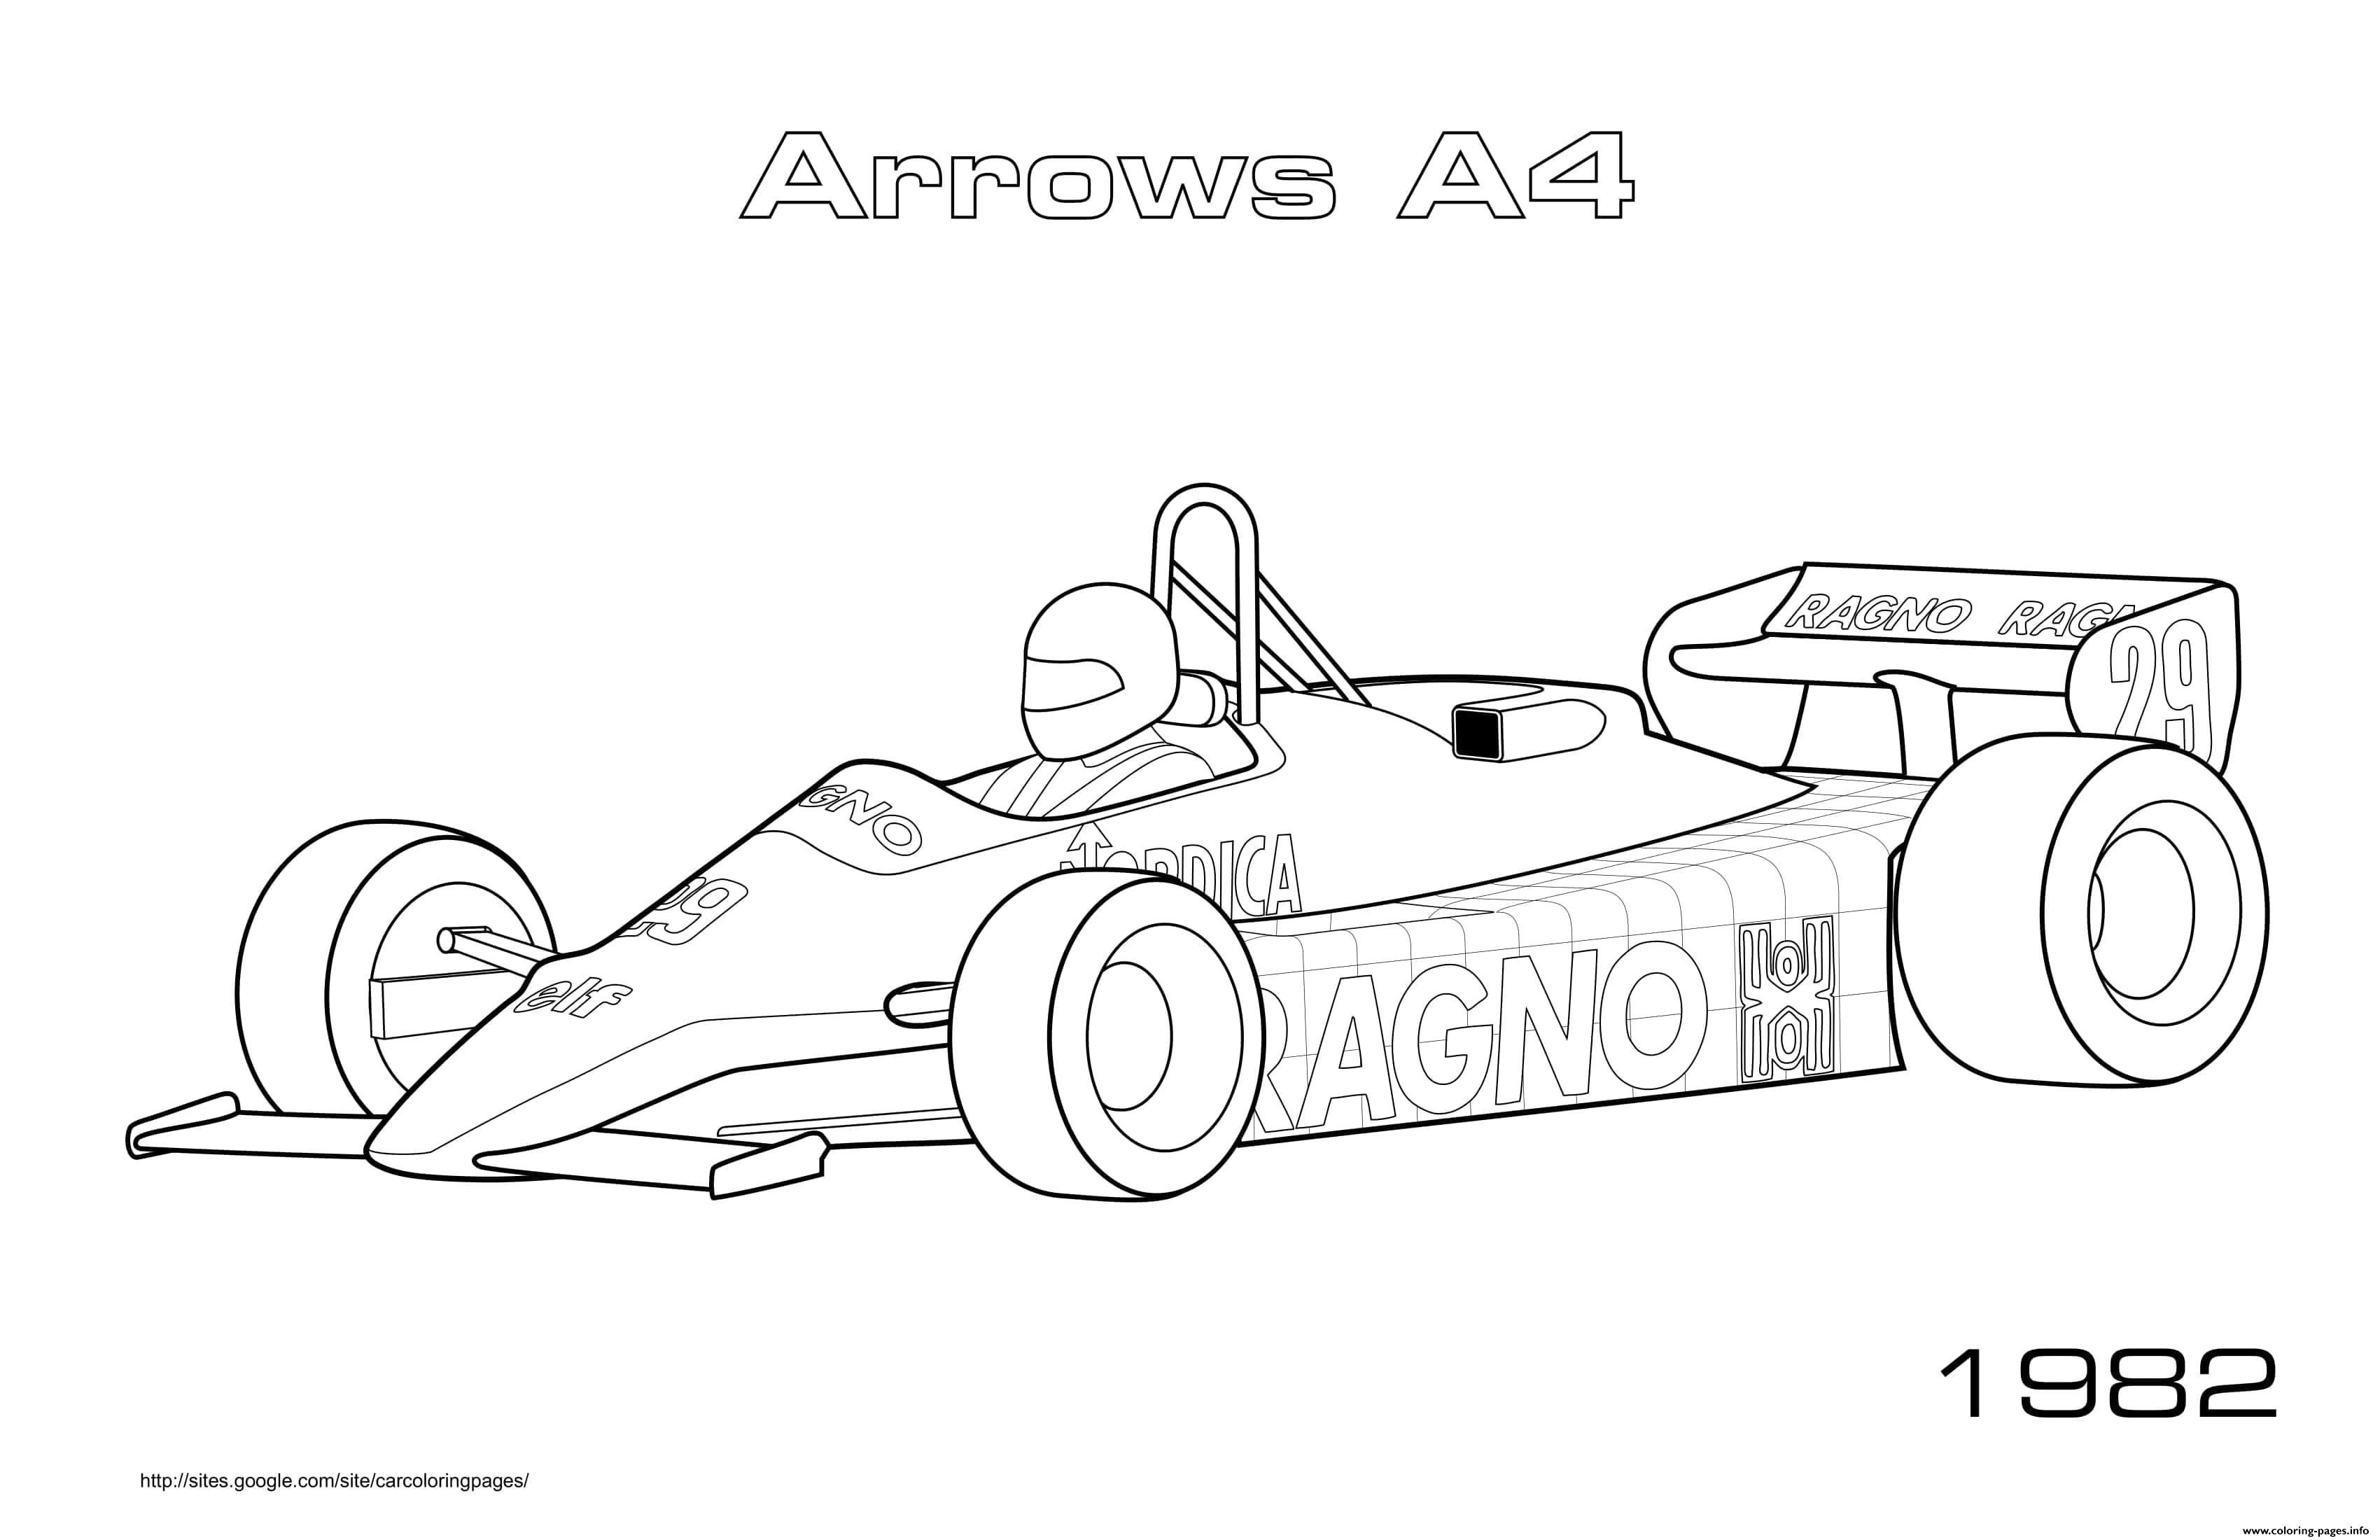 Arrows A4 1982 coloring